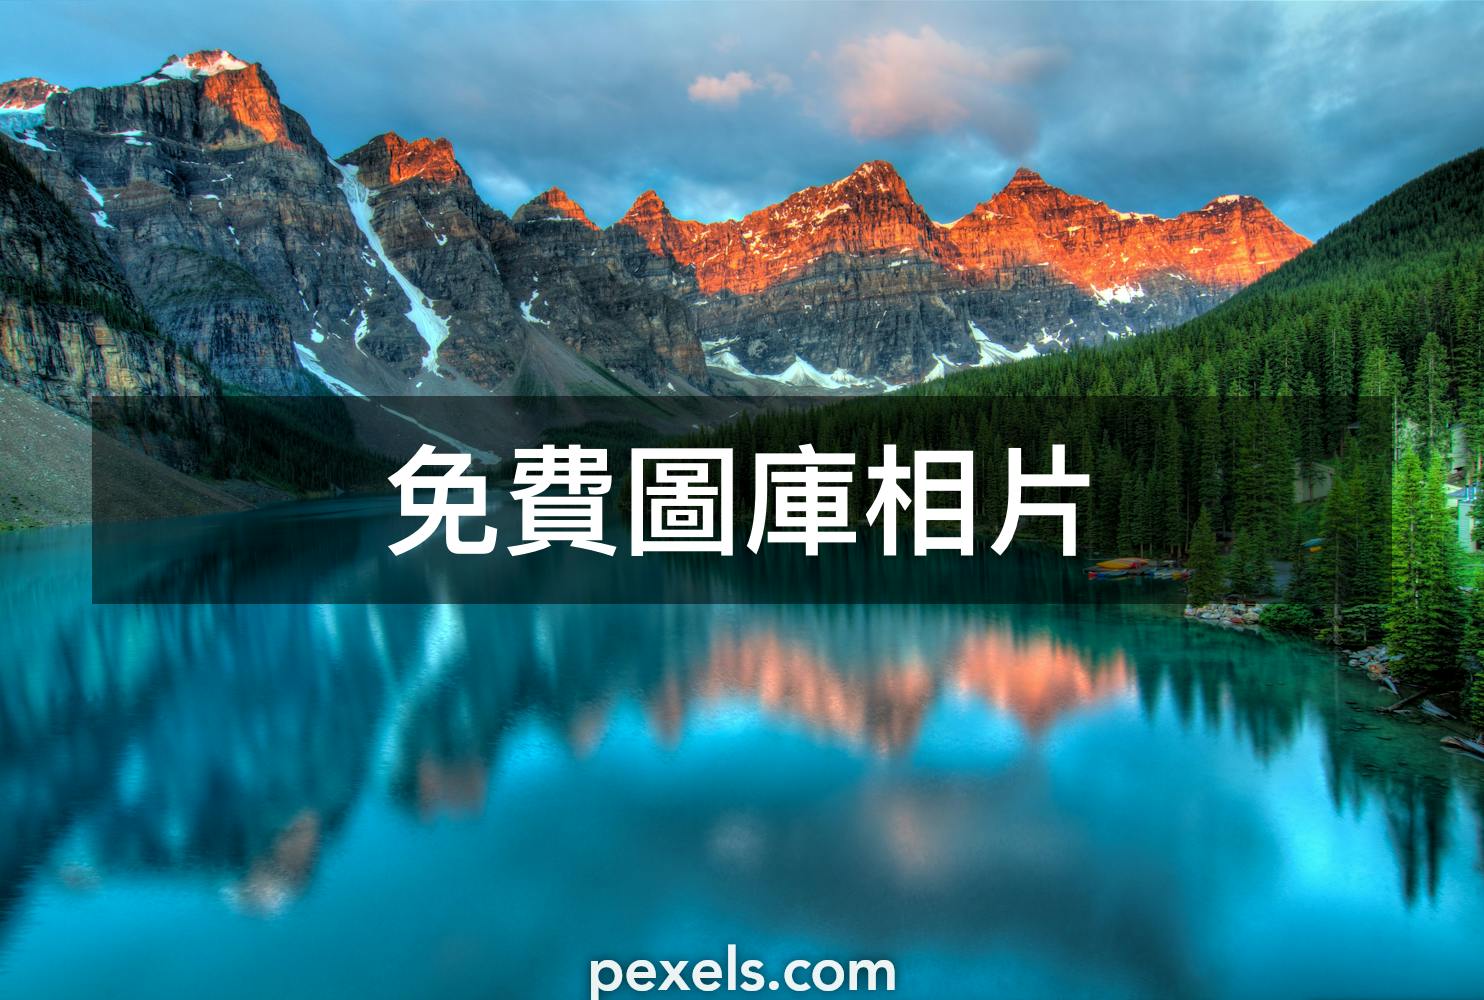 100 000 張最佳山壁紙相片 100 免費下載 Pexels 圖庫相片